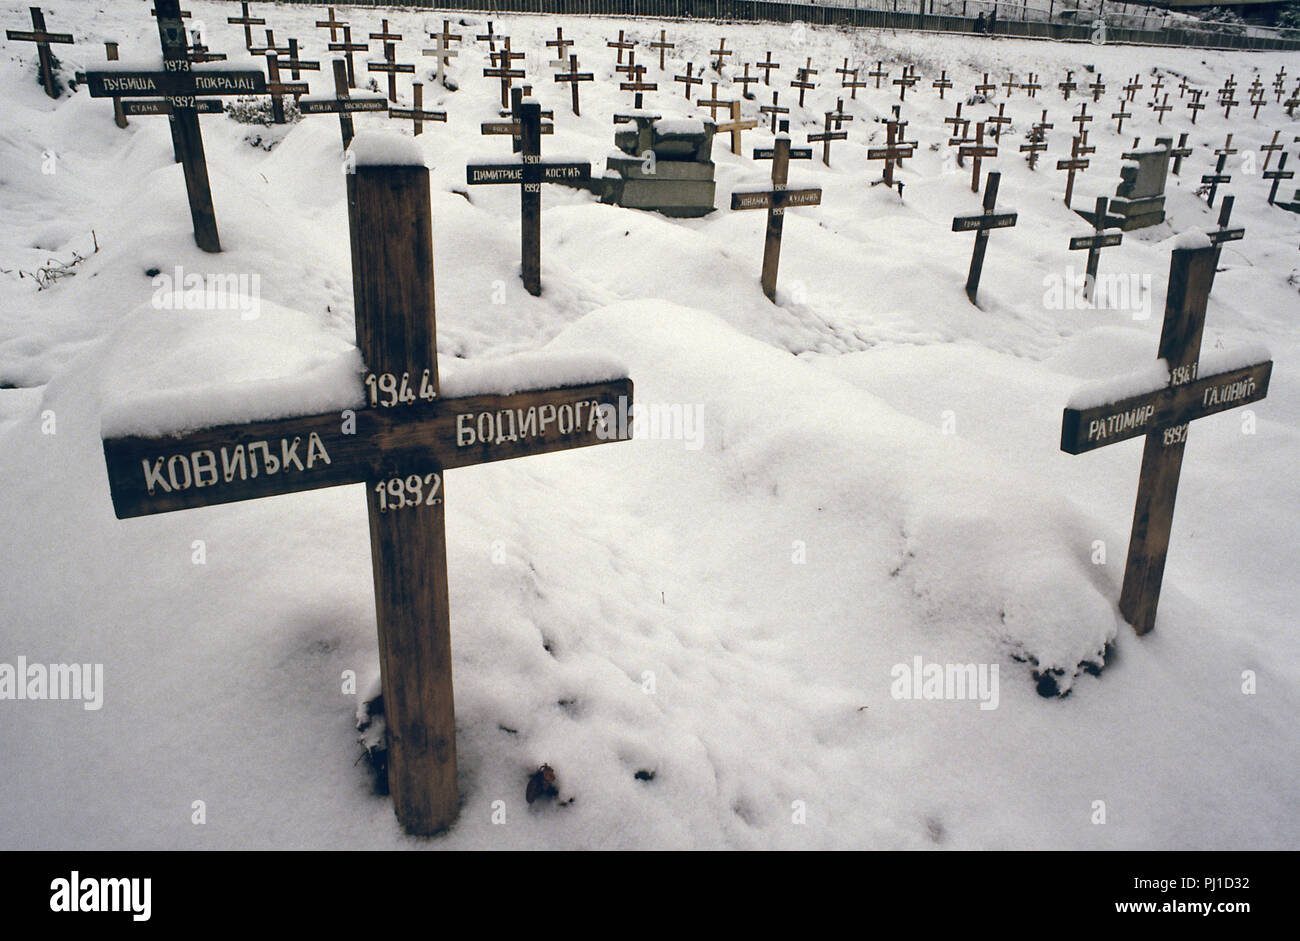 4 Marzo 1993 durante l'assedio di Sarajevo: una vista di una parte del cimitero di Lion, appena al di sotto dell'Ospedale Kosevo. Decine di croci di legno nella neve sono tutti datati 1992. Essi portano i nomi delle vittime serbe dell assedio. Foto Stock